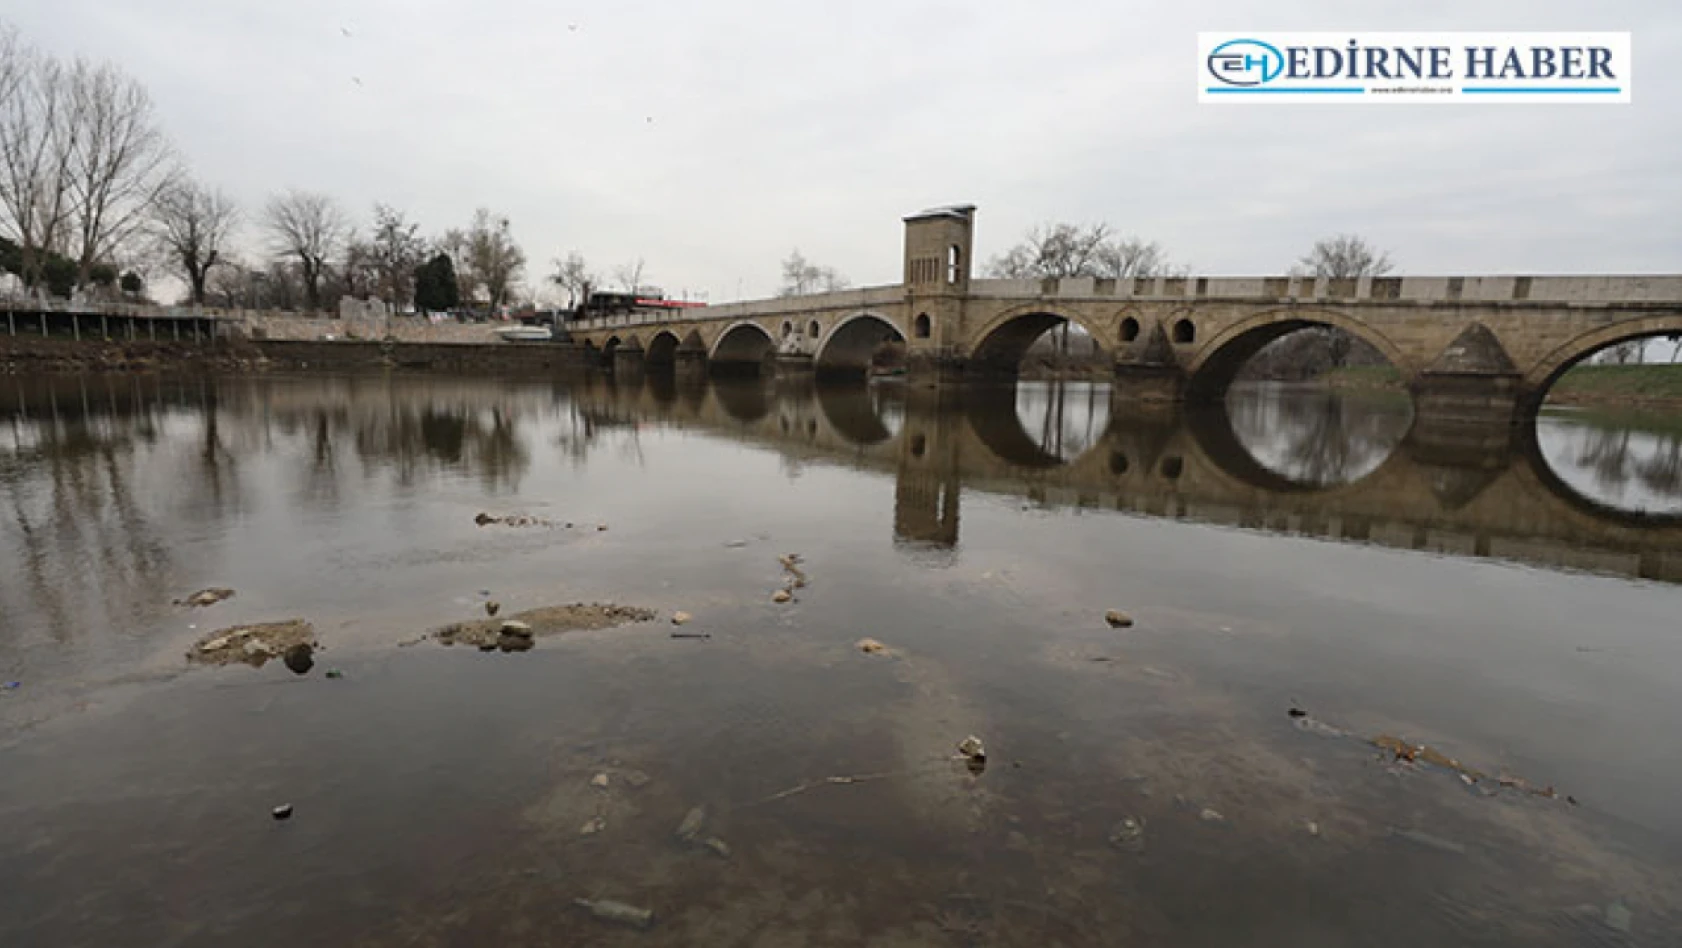 Edirne'deki nehirler kuraklığa bağlı düşük seviyede akıyor